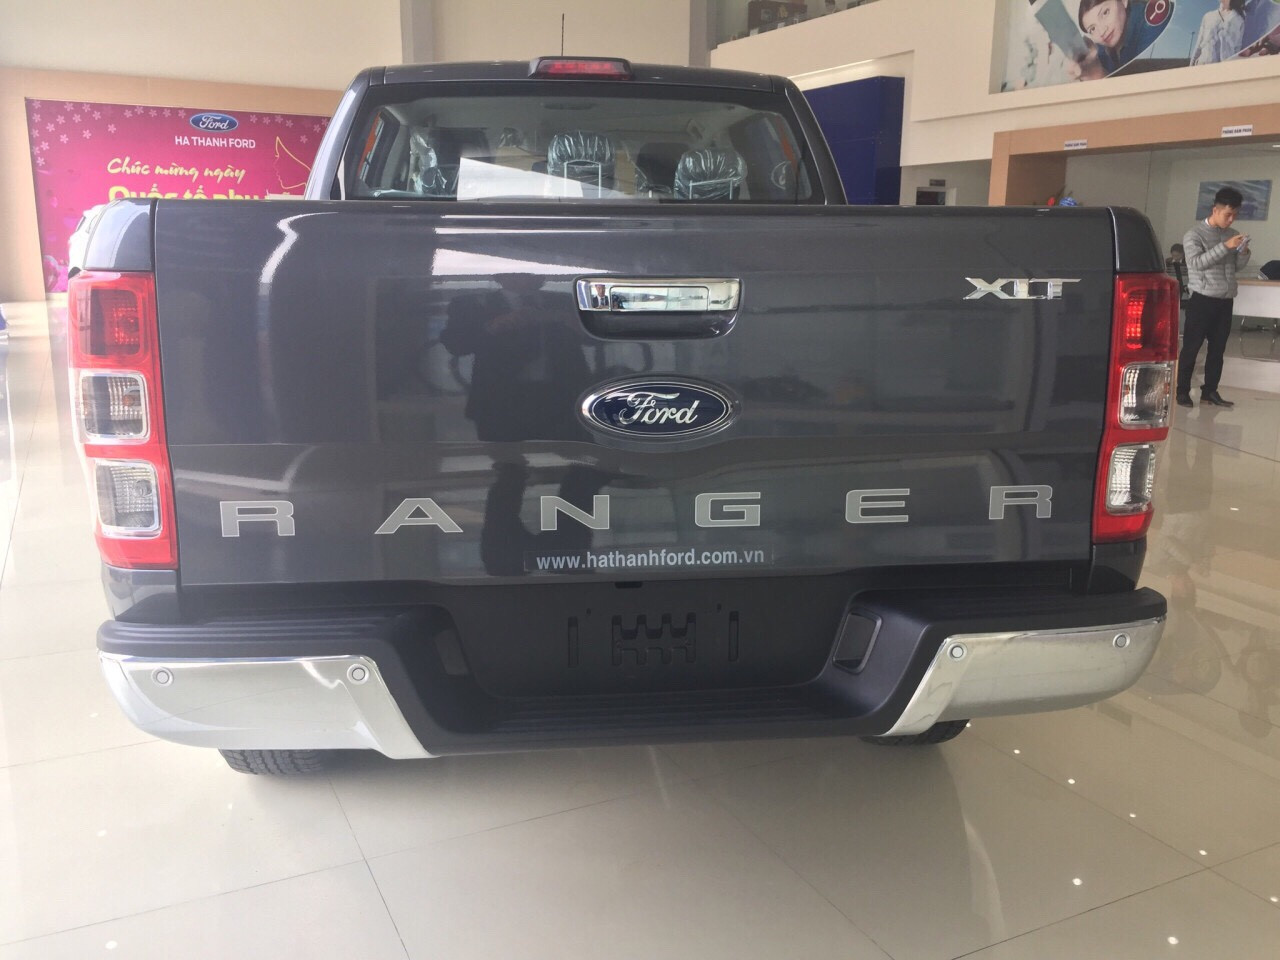 Ford Ranger XLT MT 2.2L 4×4 20217